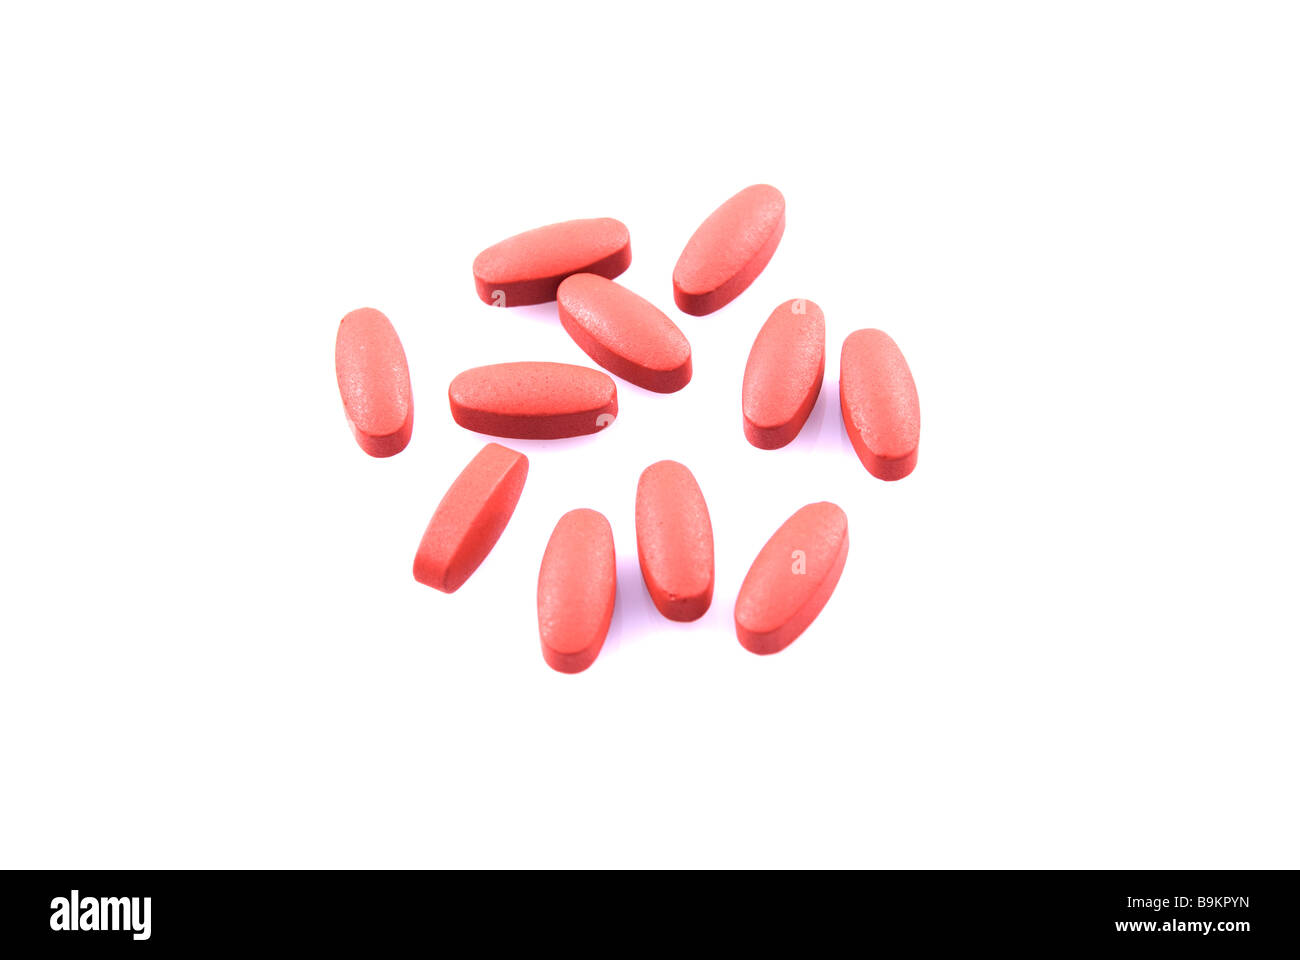 Red pillole isolata contro uno sfondo bianco Foto Stock